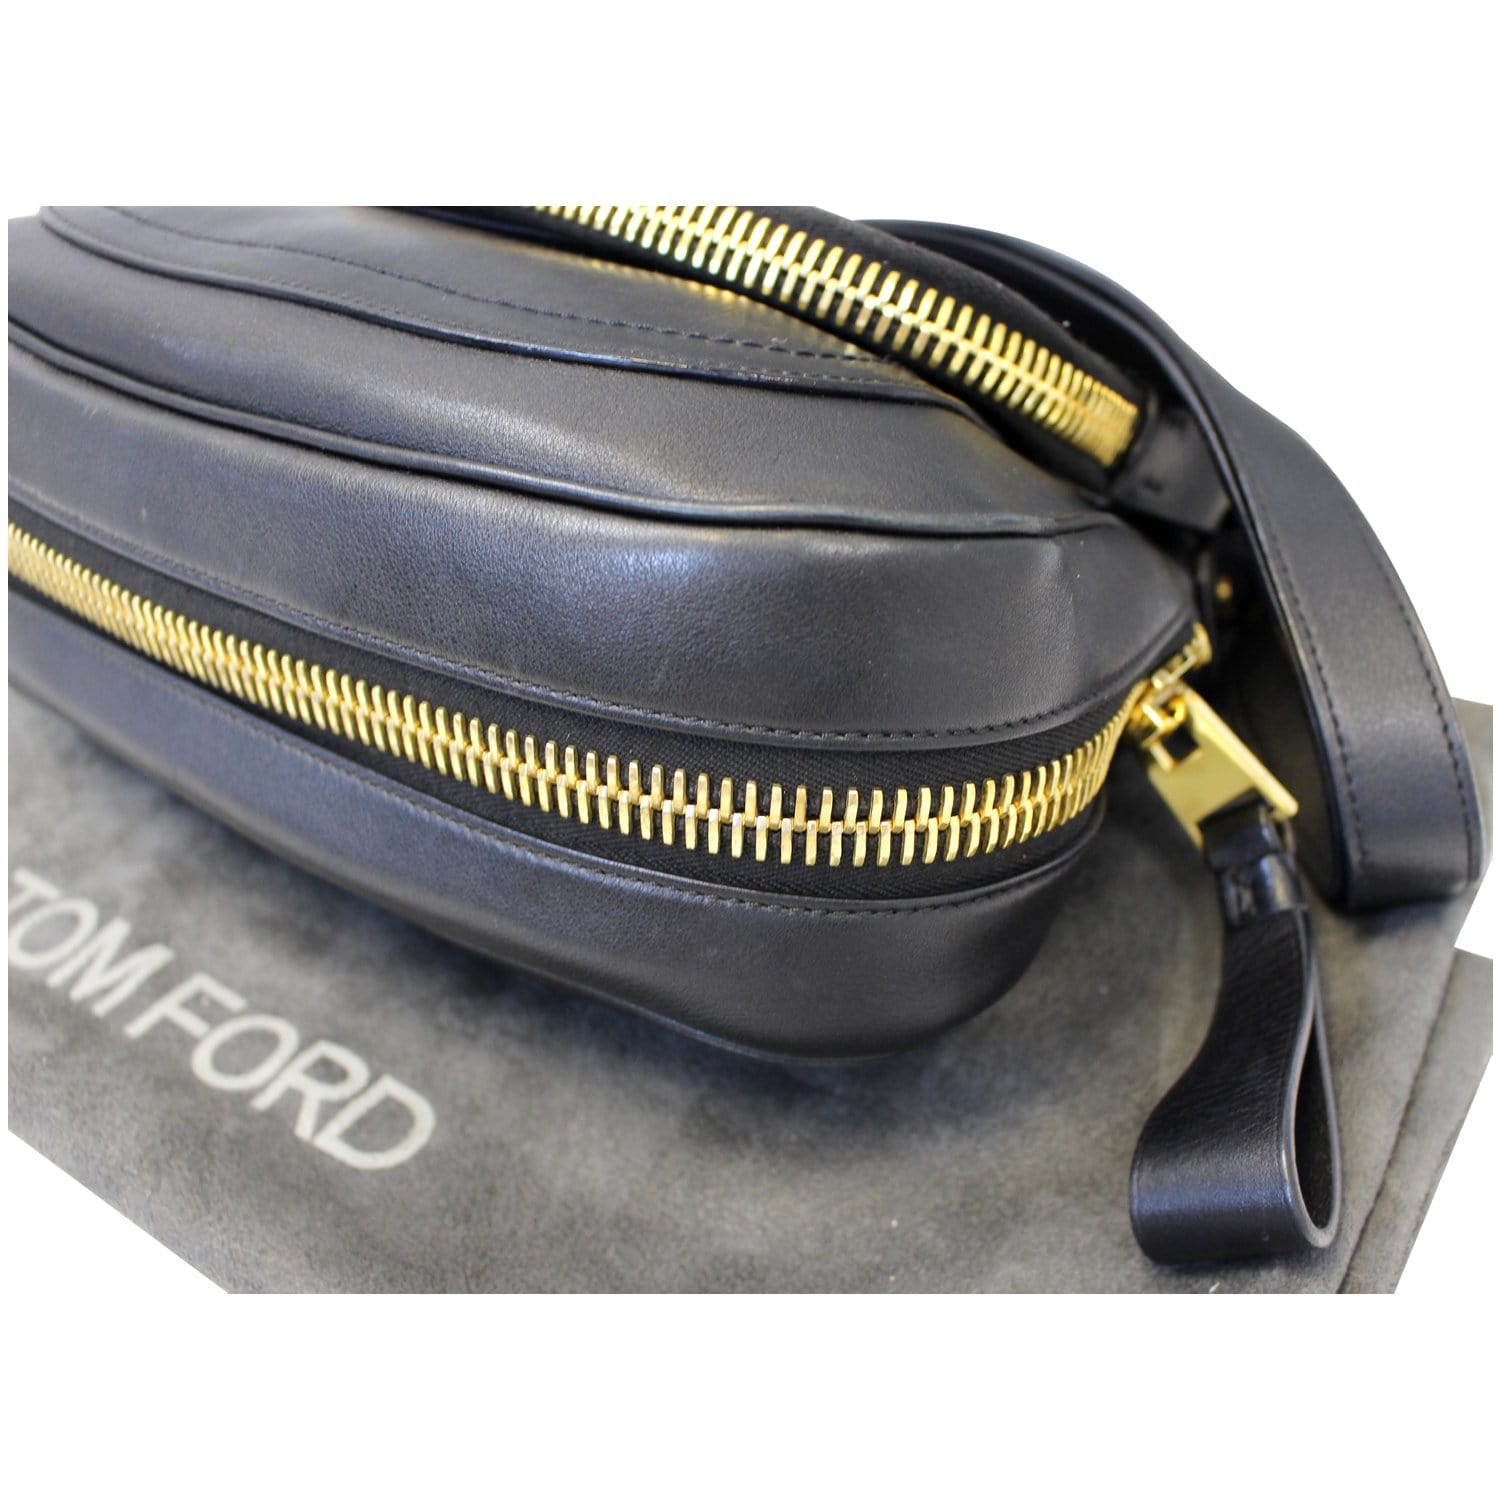 Tom Ford Jennifer Leather Handbag